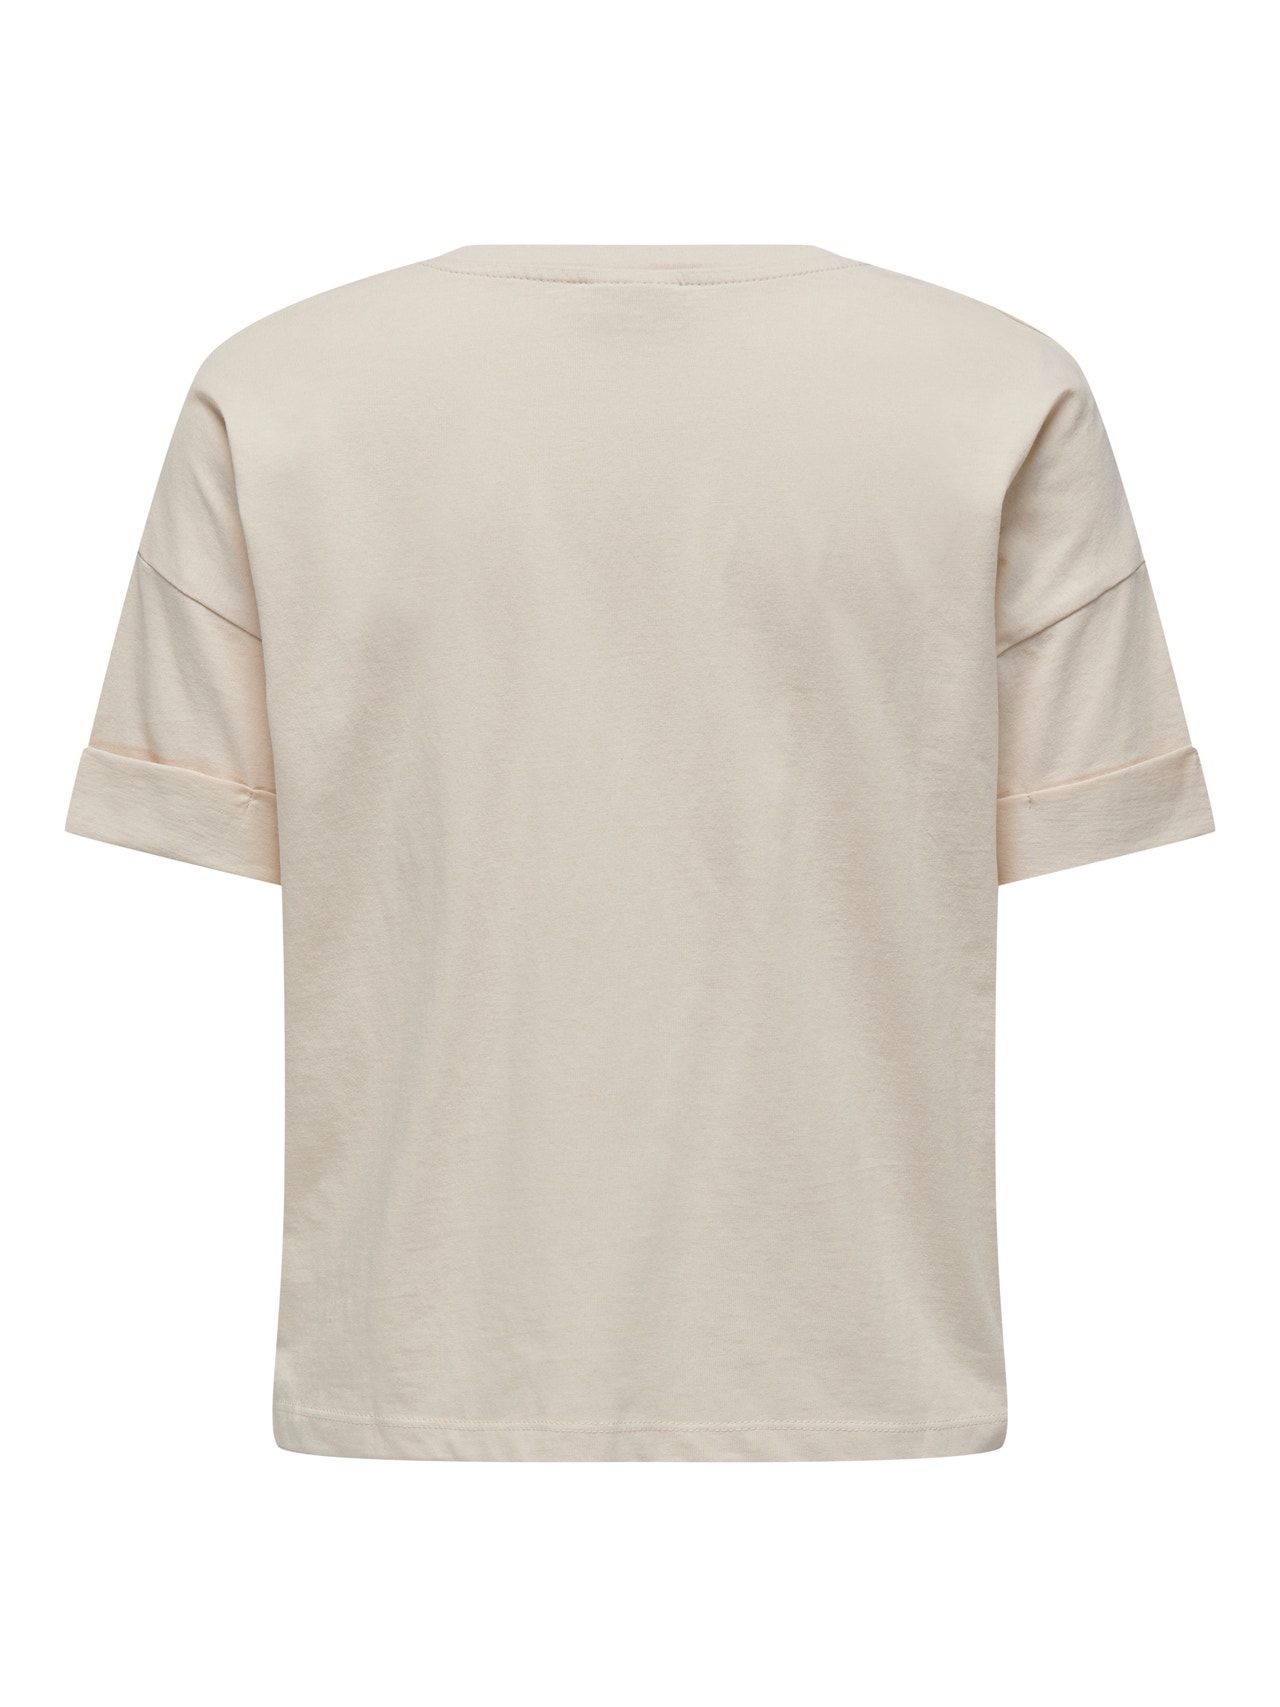 ONLY Normal geschnitten Rundhals T-Shirt -Sandshell - 15295543